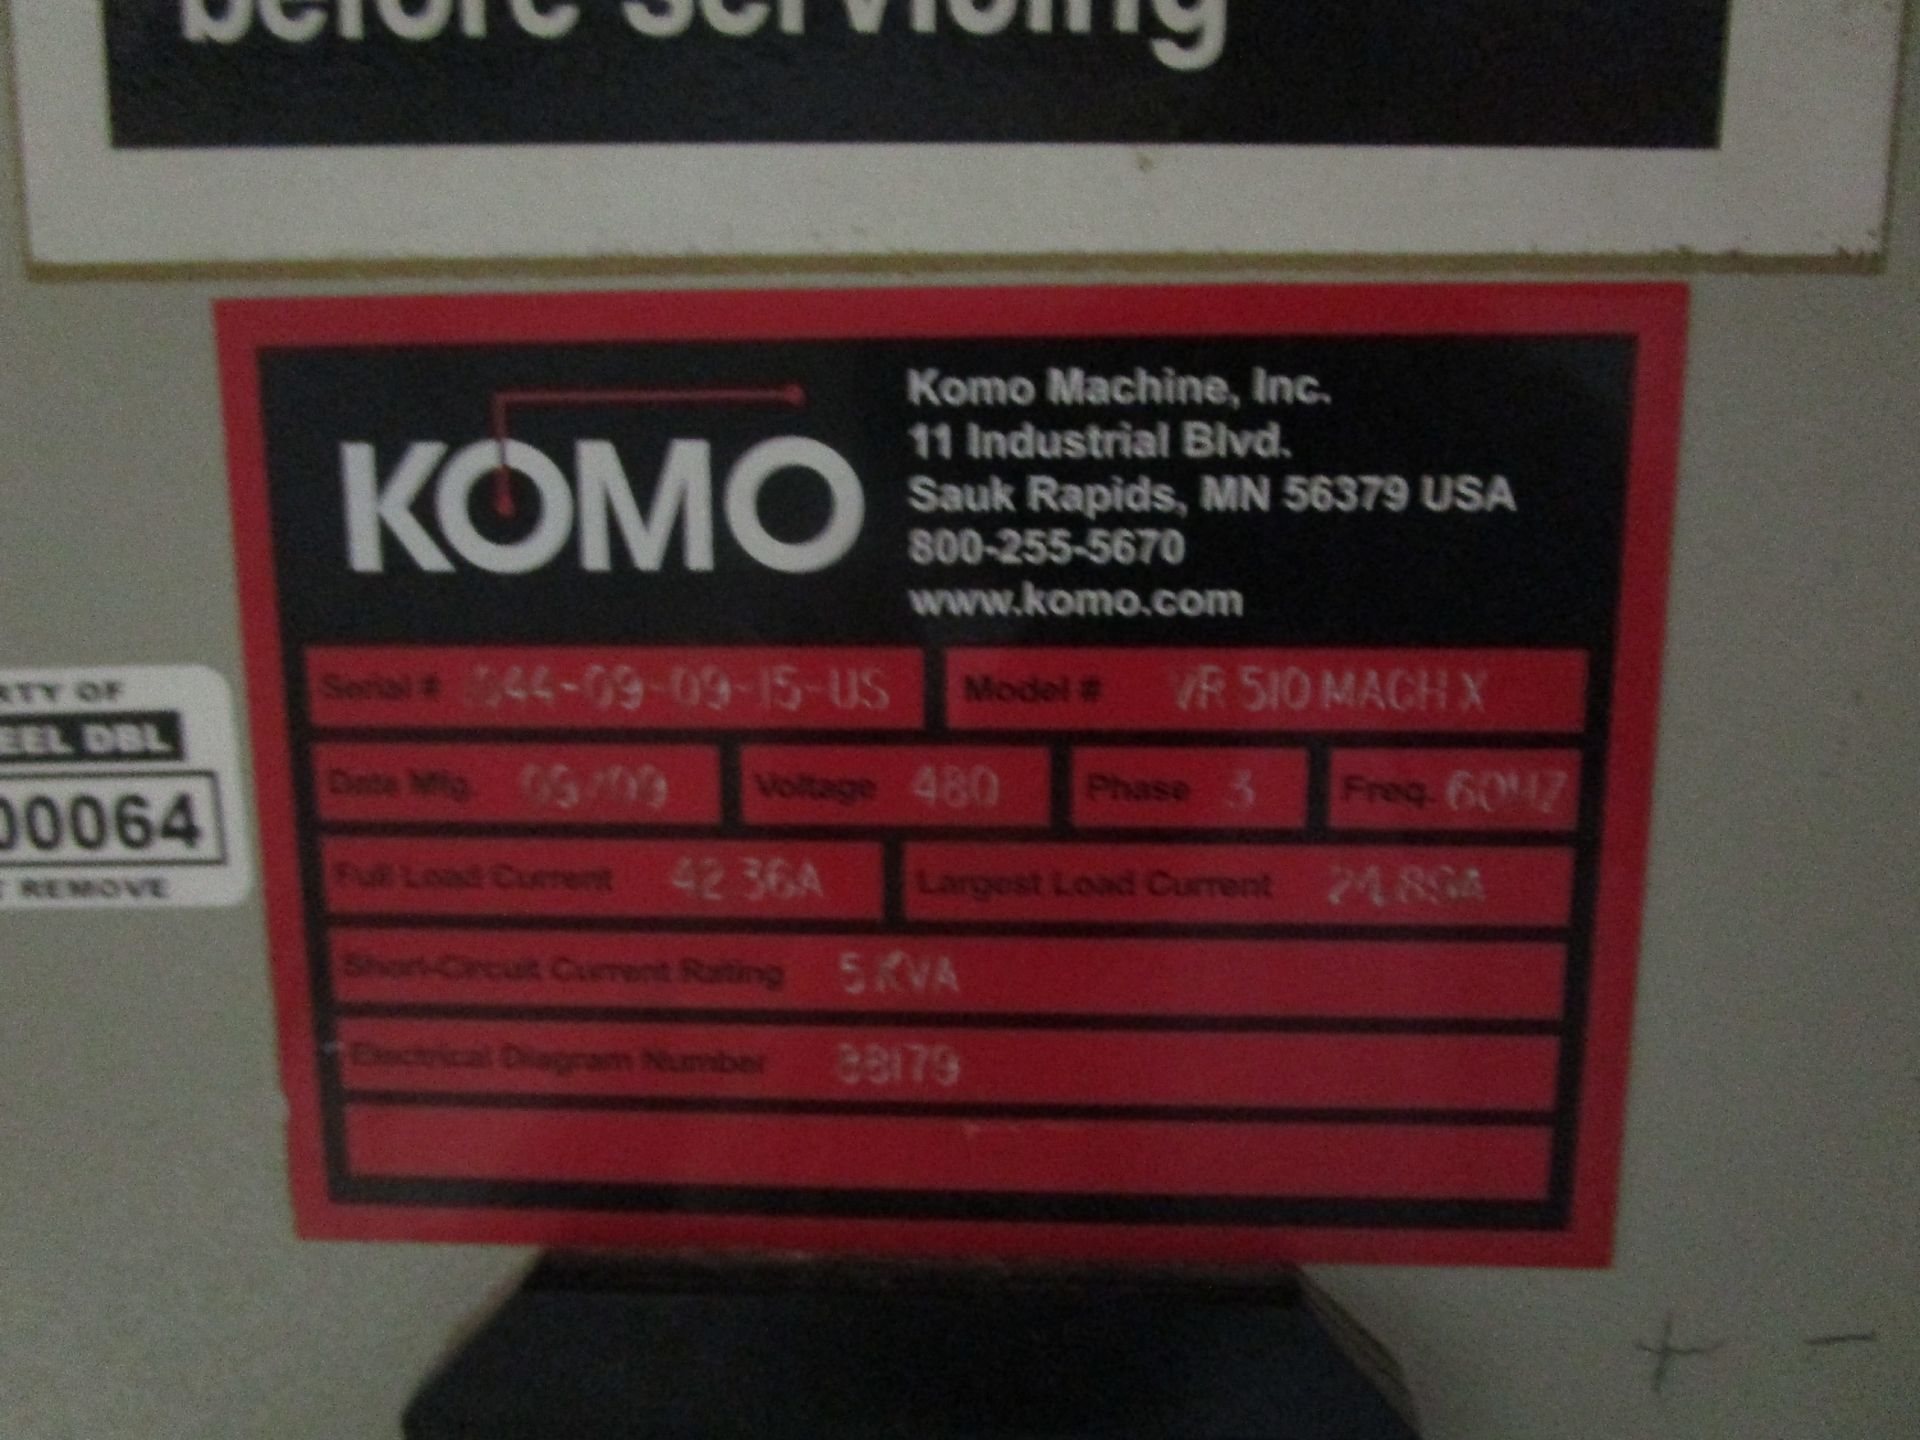 Komo VR 510 Mach Xtreme CNC Router - Bild 6 aus 9